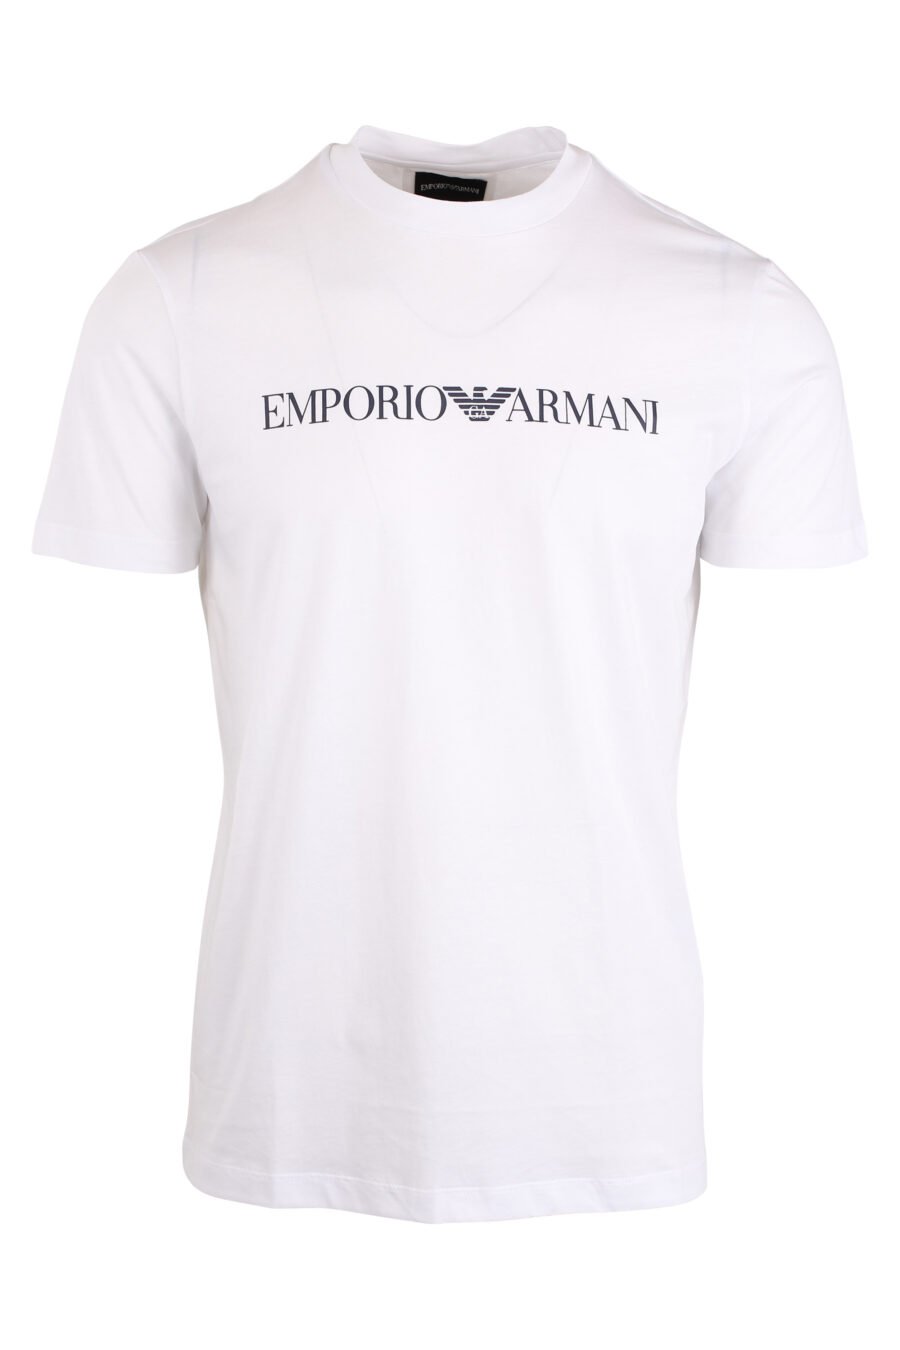 T-shirt branca com letras pretas - IMG 4271